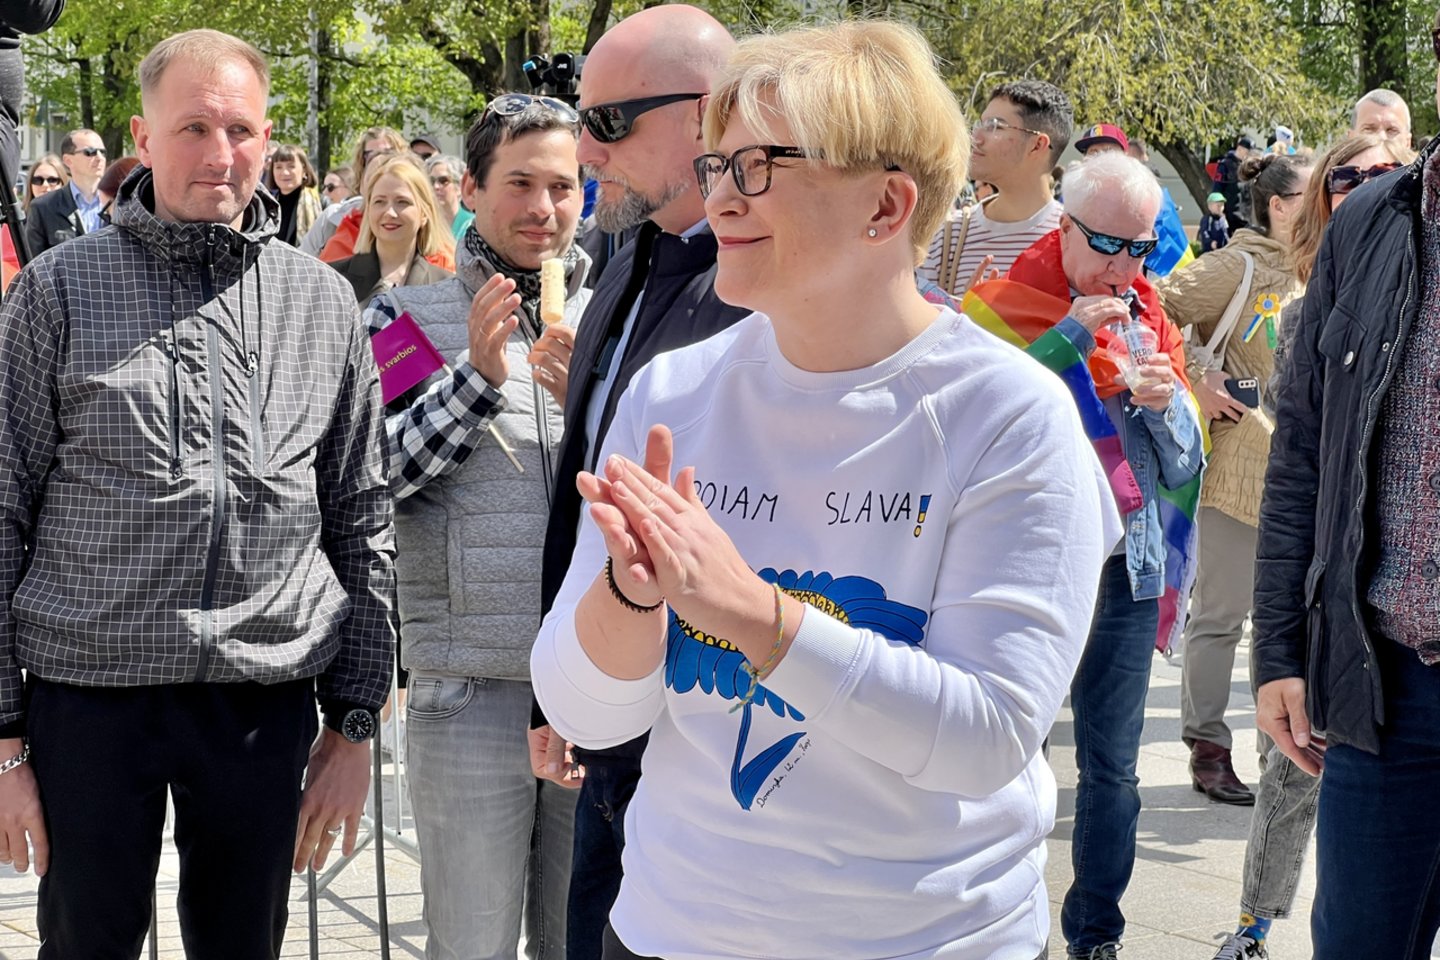 Minint Tarptautinę Šeimos dieną, sekmadienį popiet į Vilniaus Katedros aikštėje organizuojamą šventę „Visos Šeimos svarbios“ renkasi šimtai miestiečių.<br> V. Ščiavinsko nuotr.